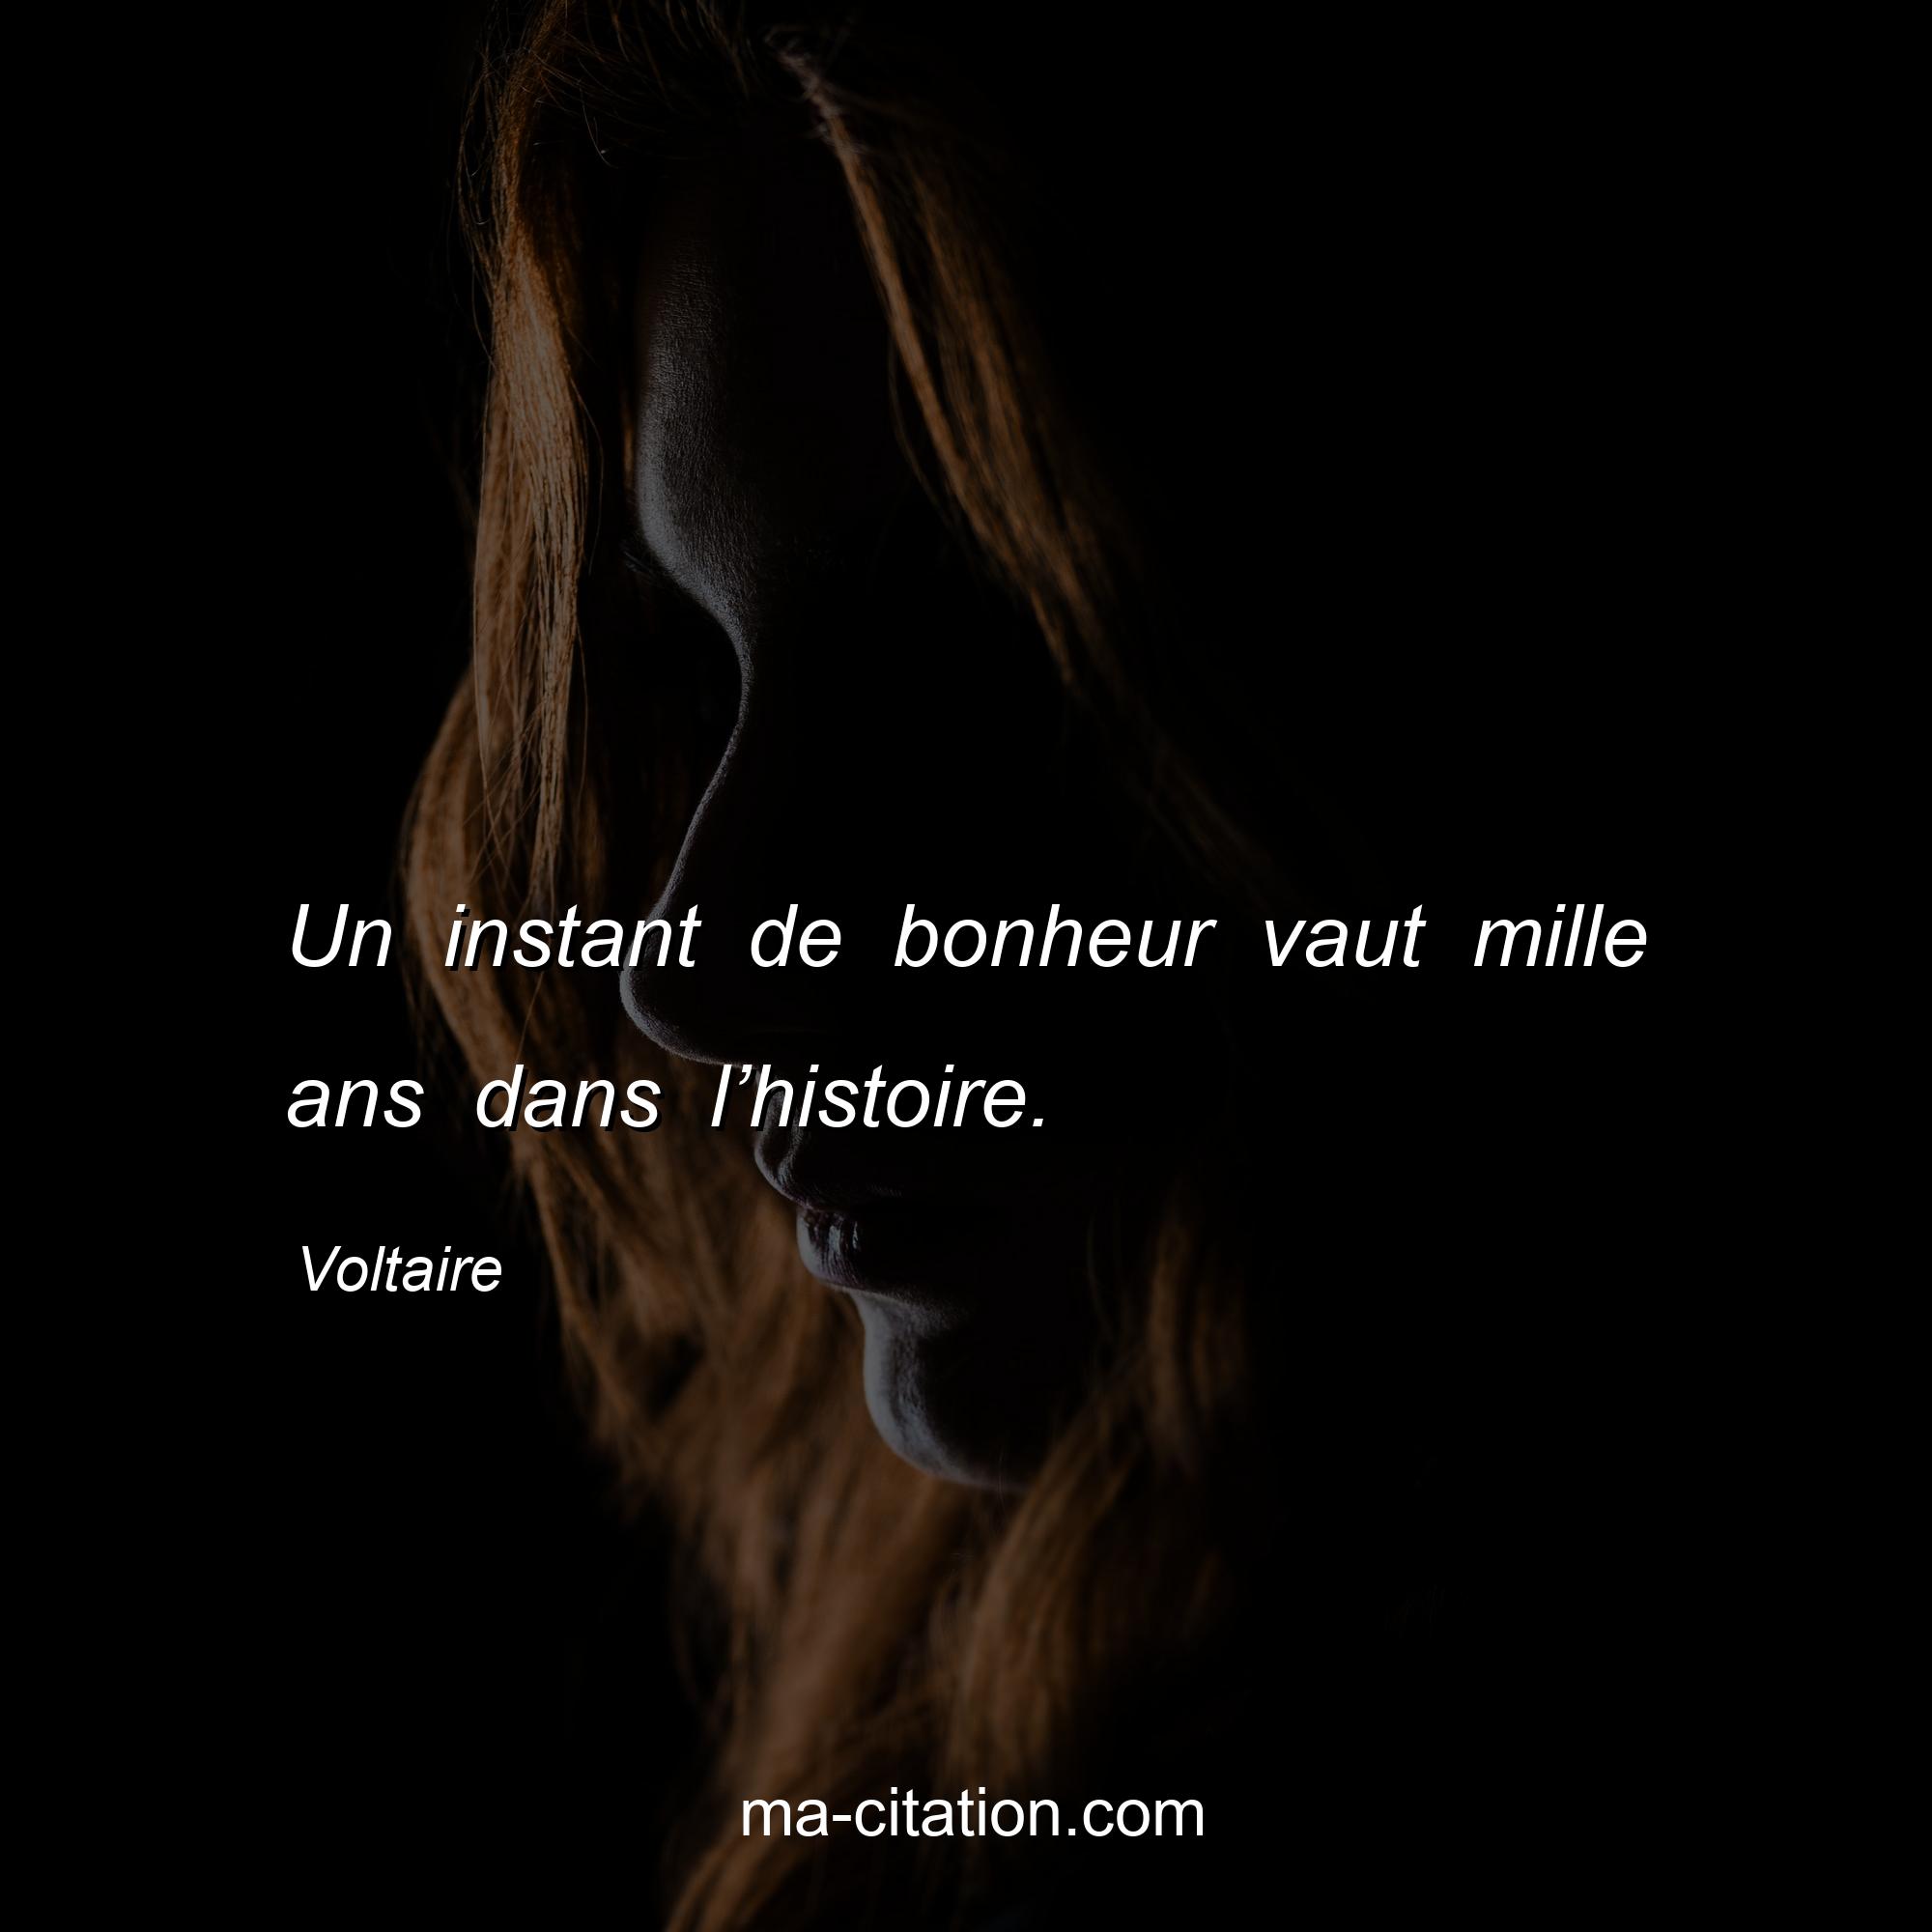 Voltaire : Un instant de bonheur vaut mille ans dans l’histoire.